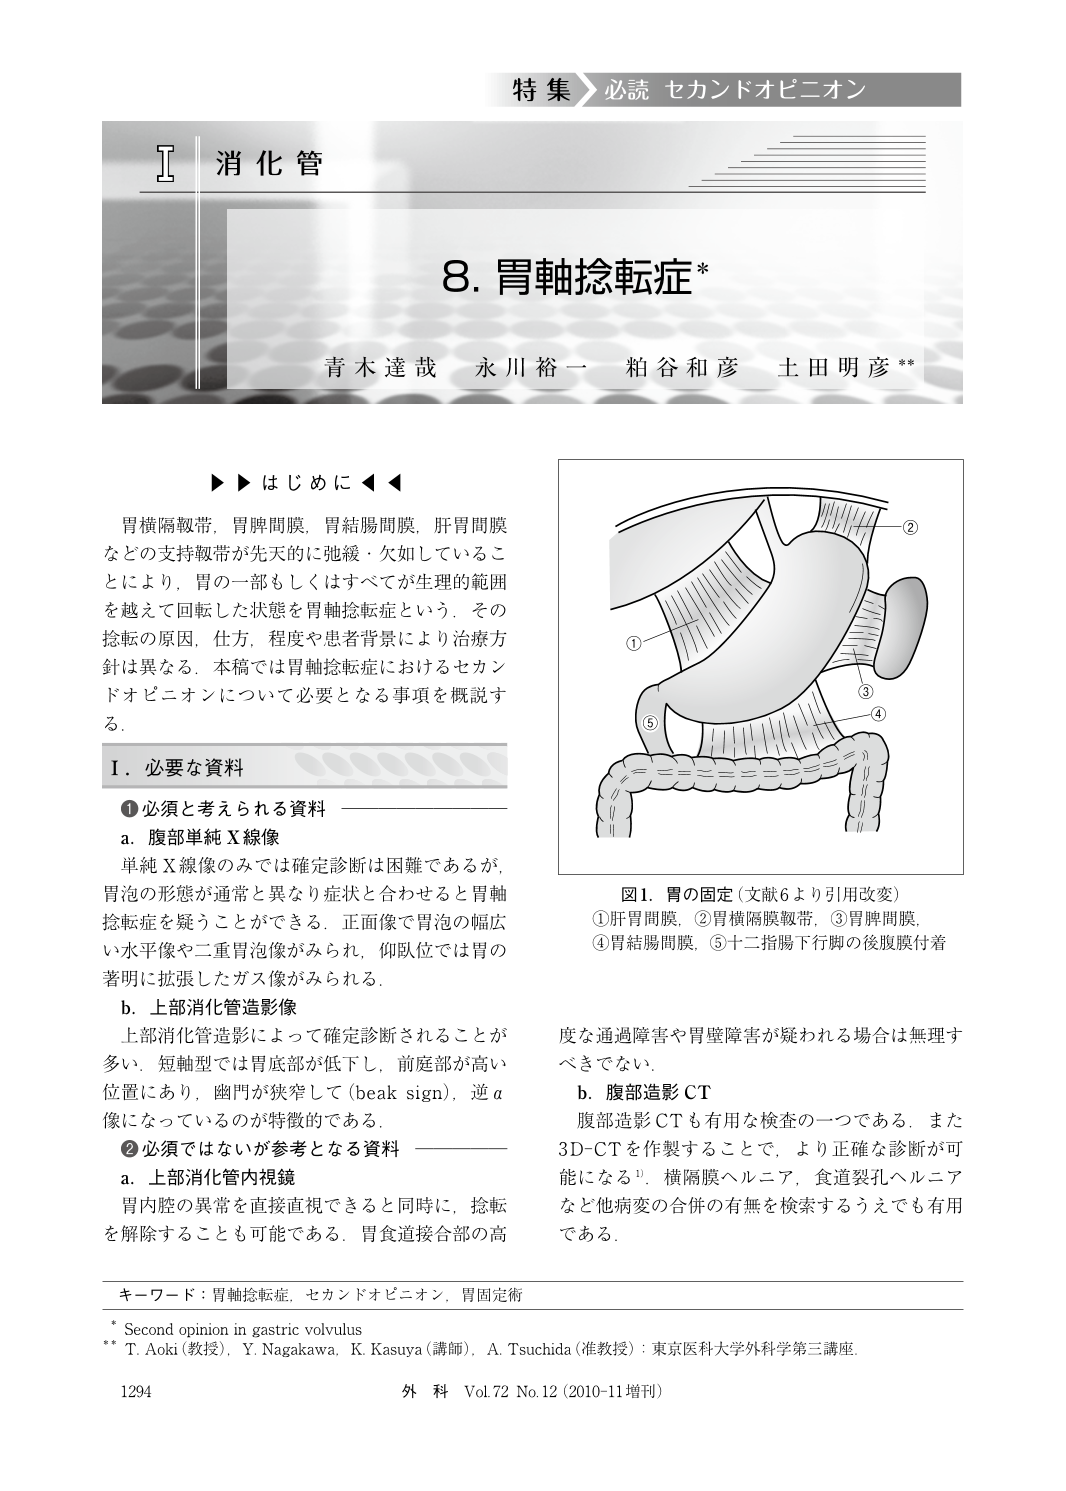 消化管 胃軸捻転症 臨床雑誌外科 72巻12号 医書 Jp